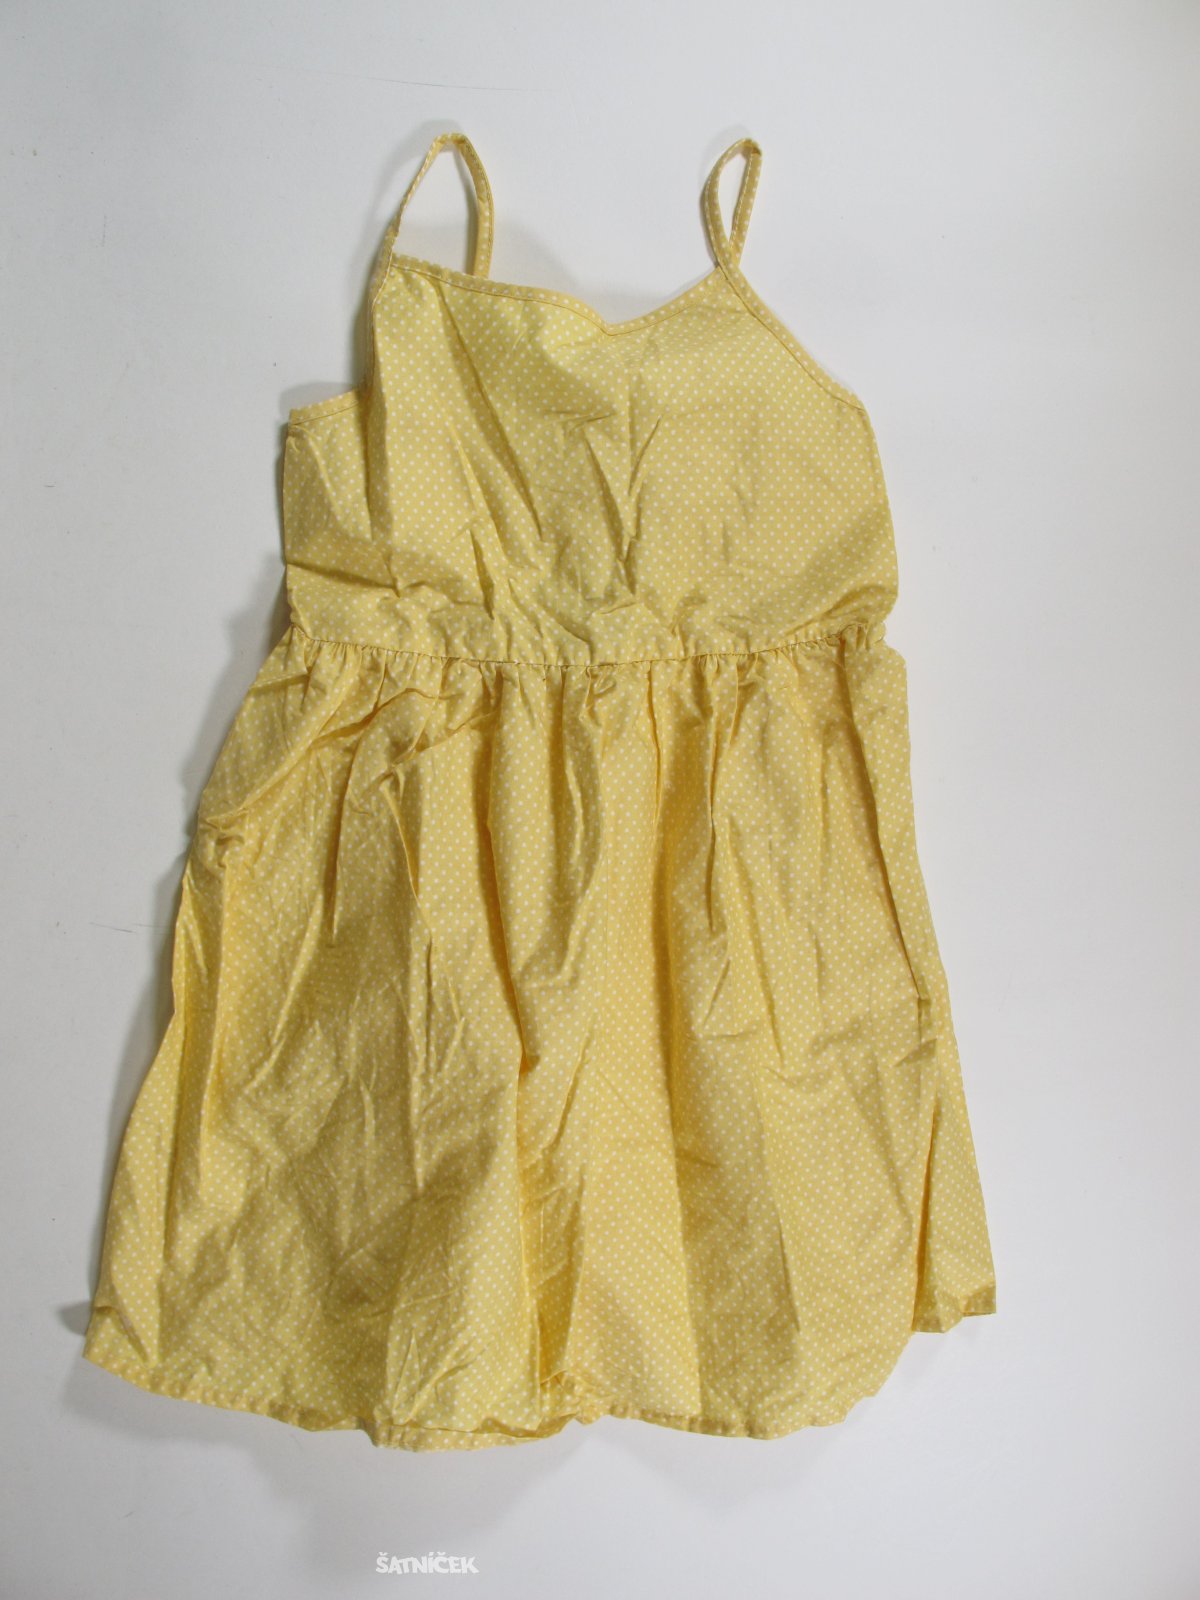 Šaty pro holky bílo žluté  outlet